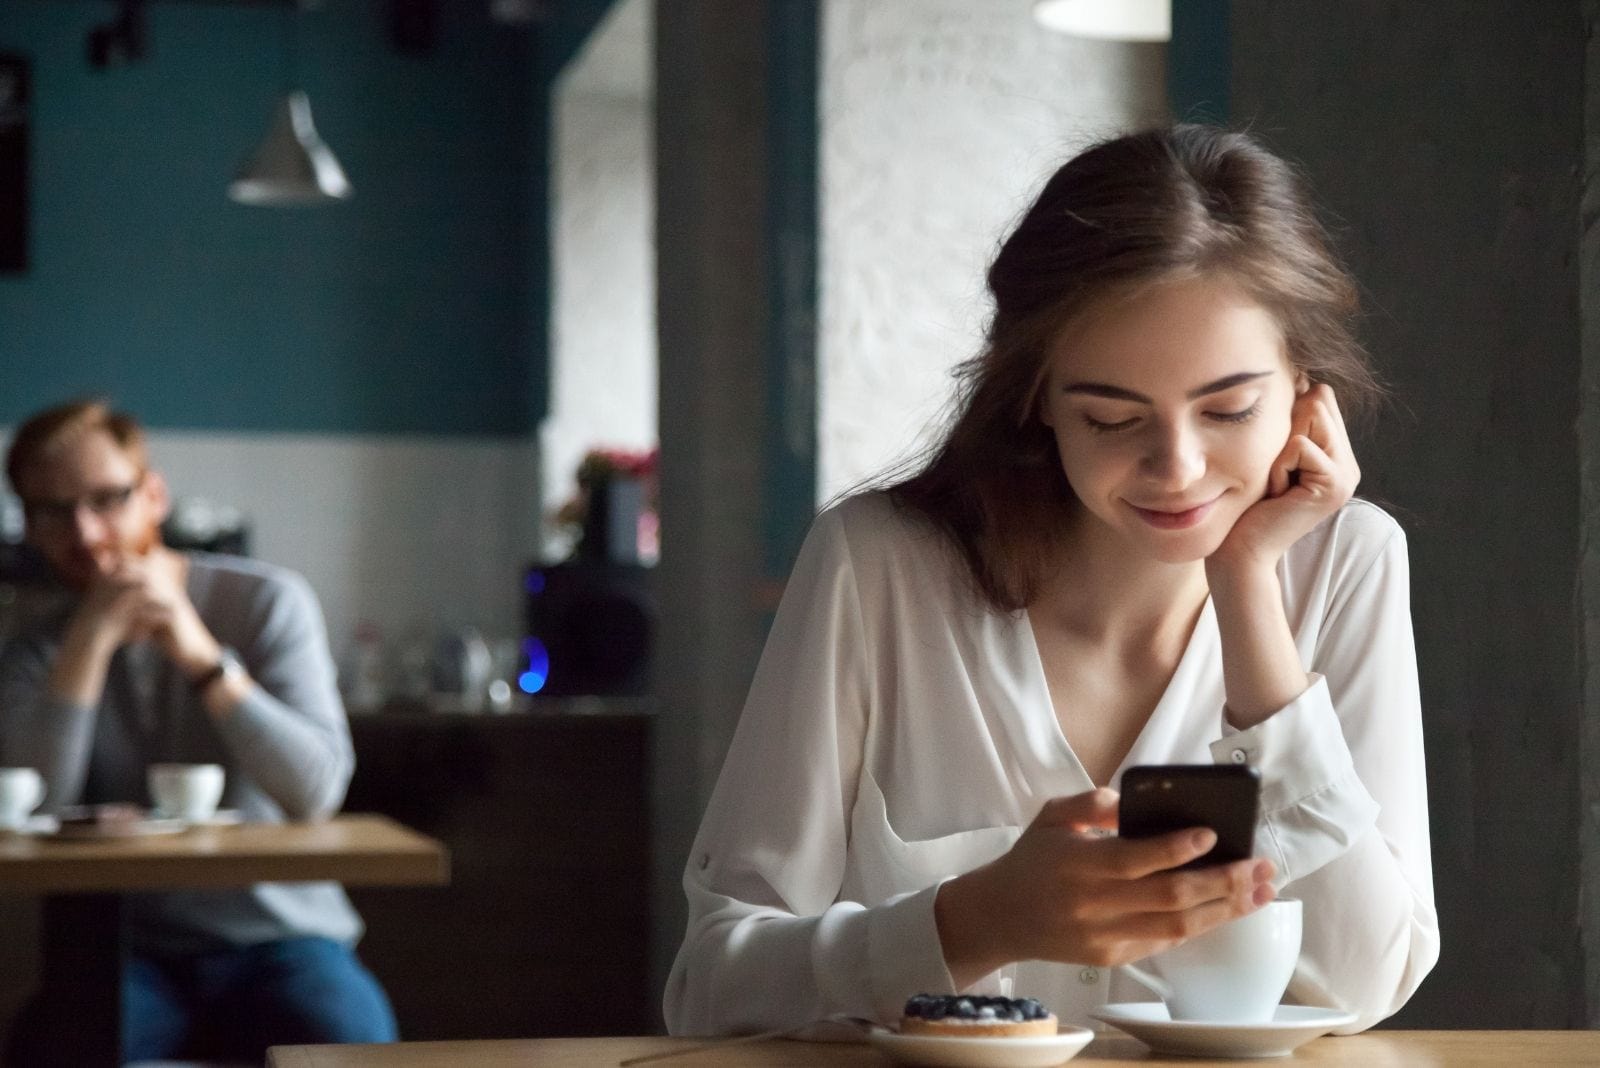 donna che fissa il suo smartphone sorridendo all'interno di un caffè con un uomo in fondo che la fissa